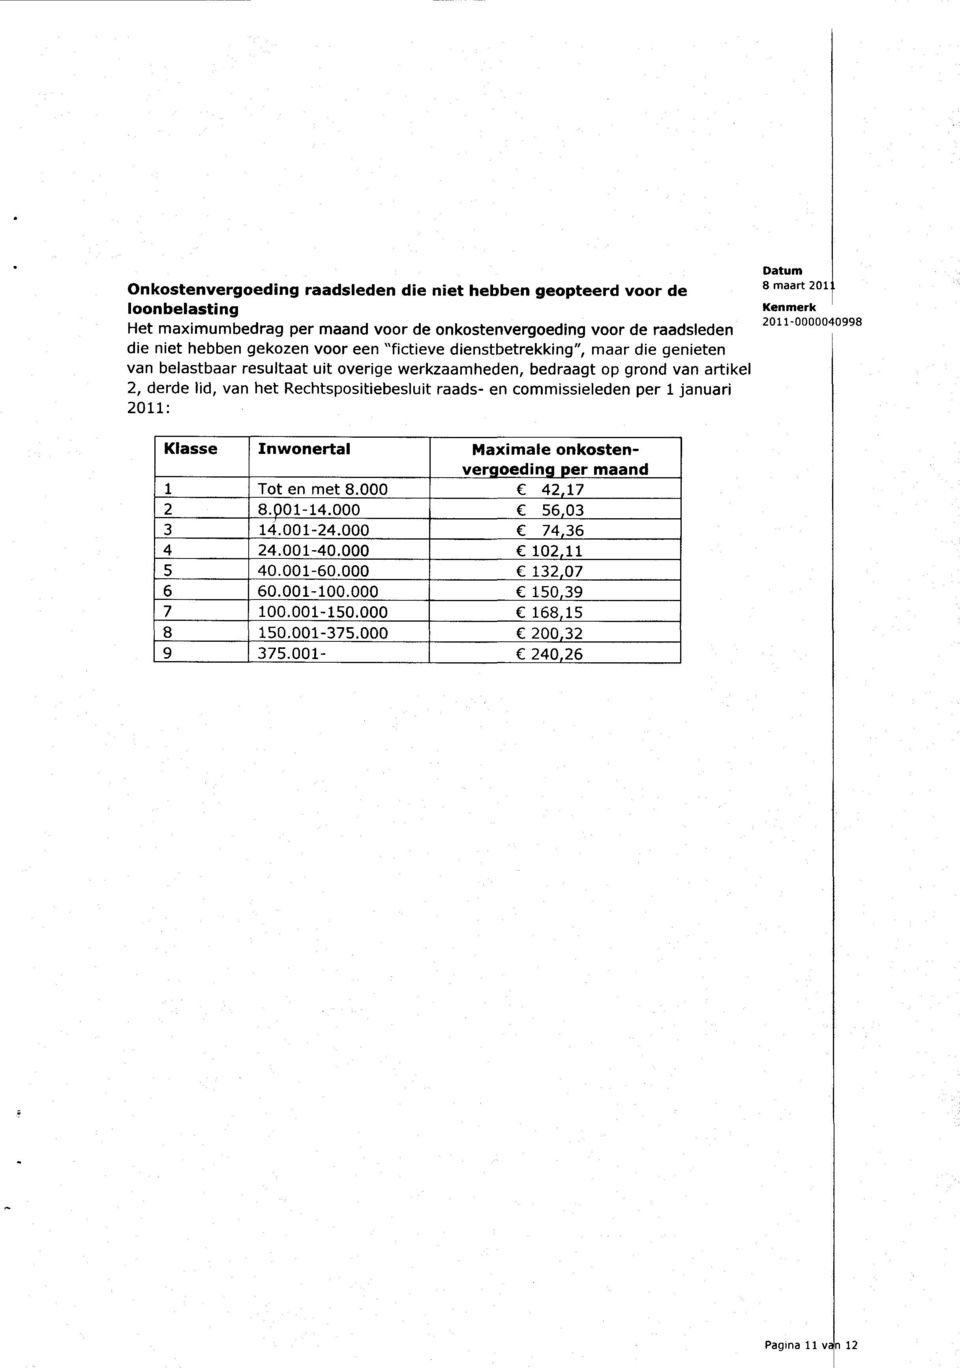 Rechtspositiebesluit raads- en commissieleden per 1 januari 2011: Klasse Inwonertal Maximale onkostenver oedin er maand 1 Tot en met 8.000 f 42 17 2 8. 01-14.